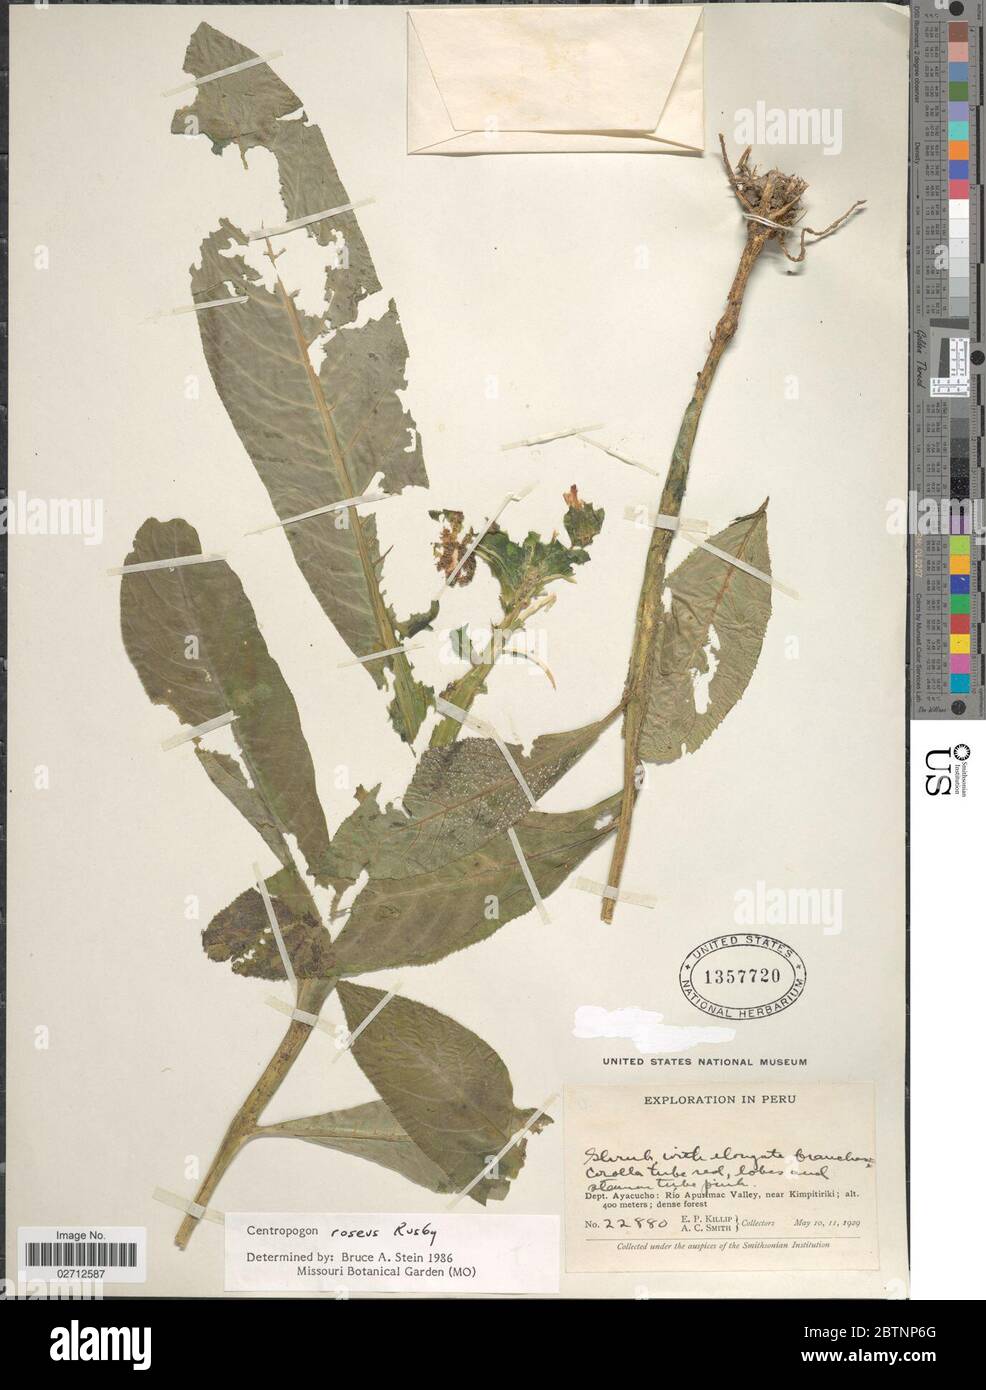 Centropogon roseus Rusby. Banque D'Images